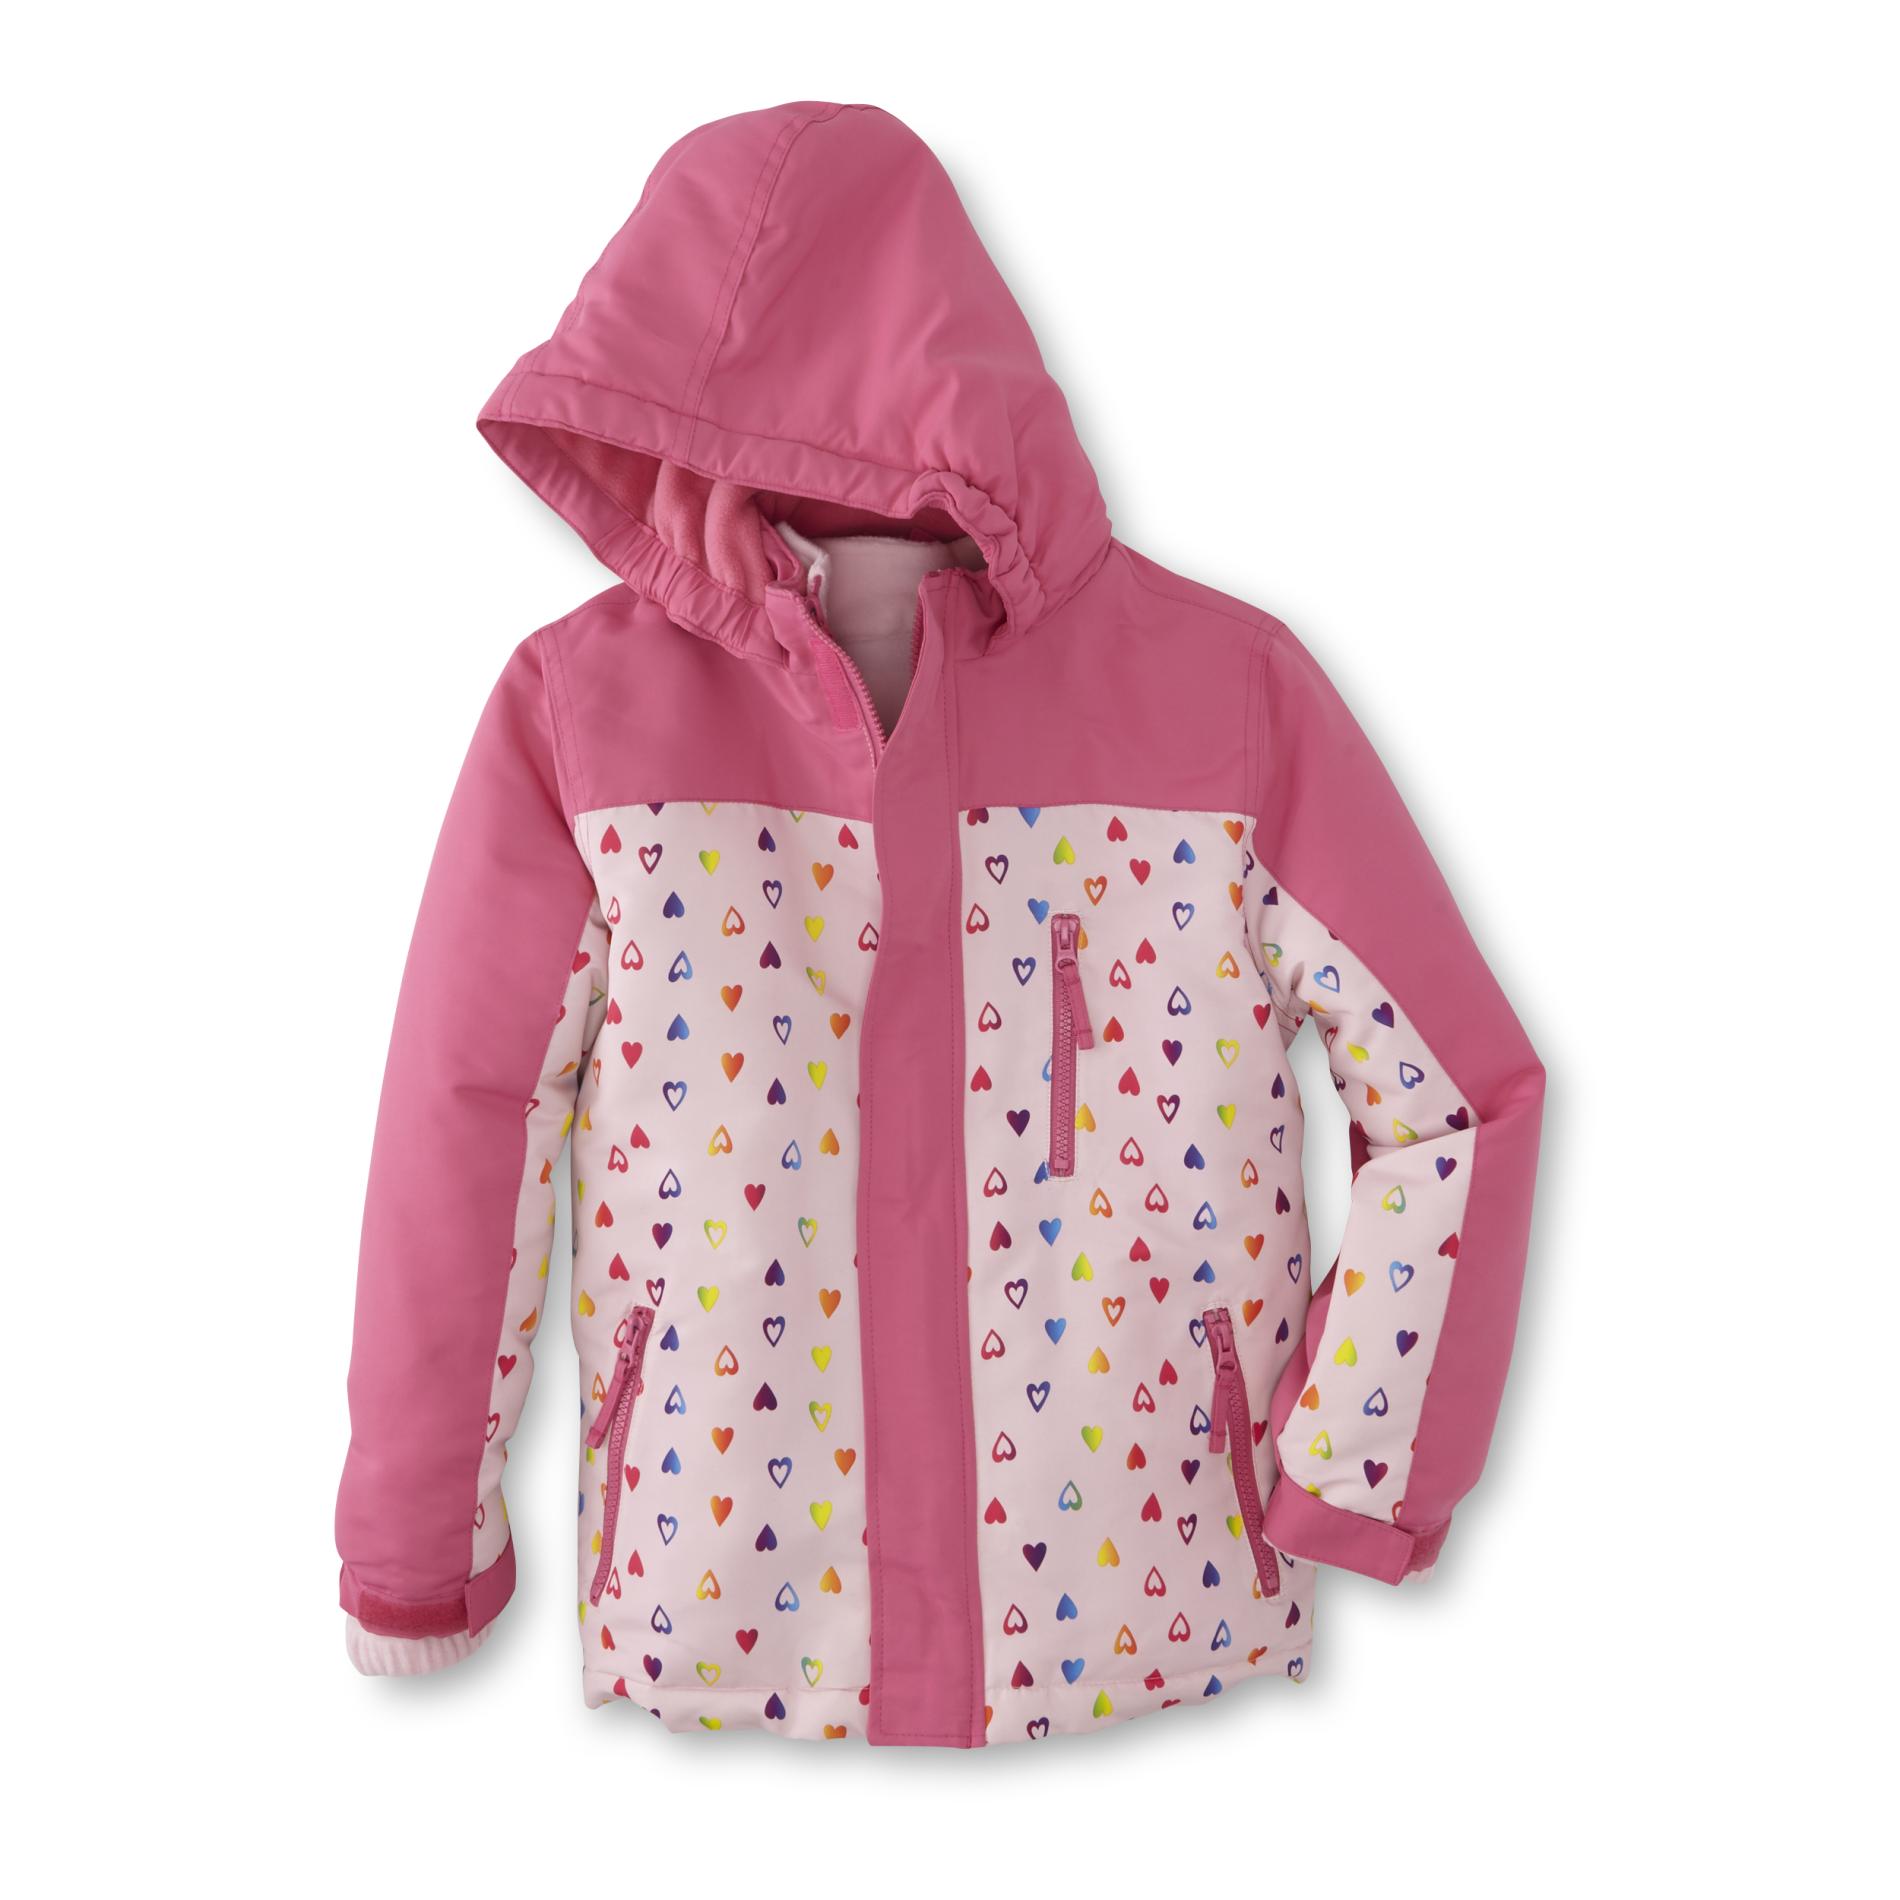 Athletech Infant & Toddler Girls' Winter Coat & Removable Liner Jacket - Hearts